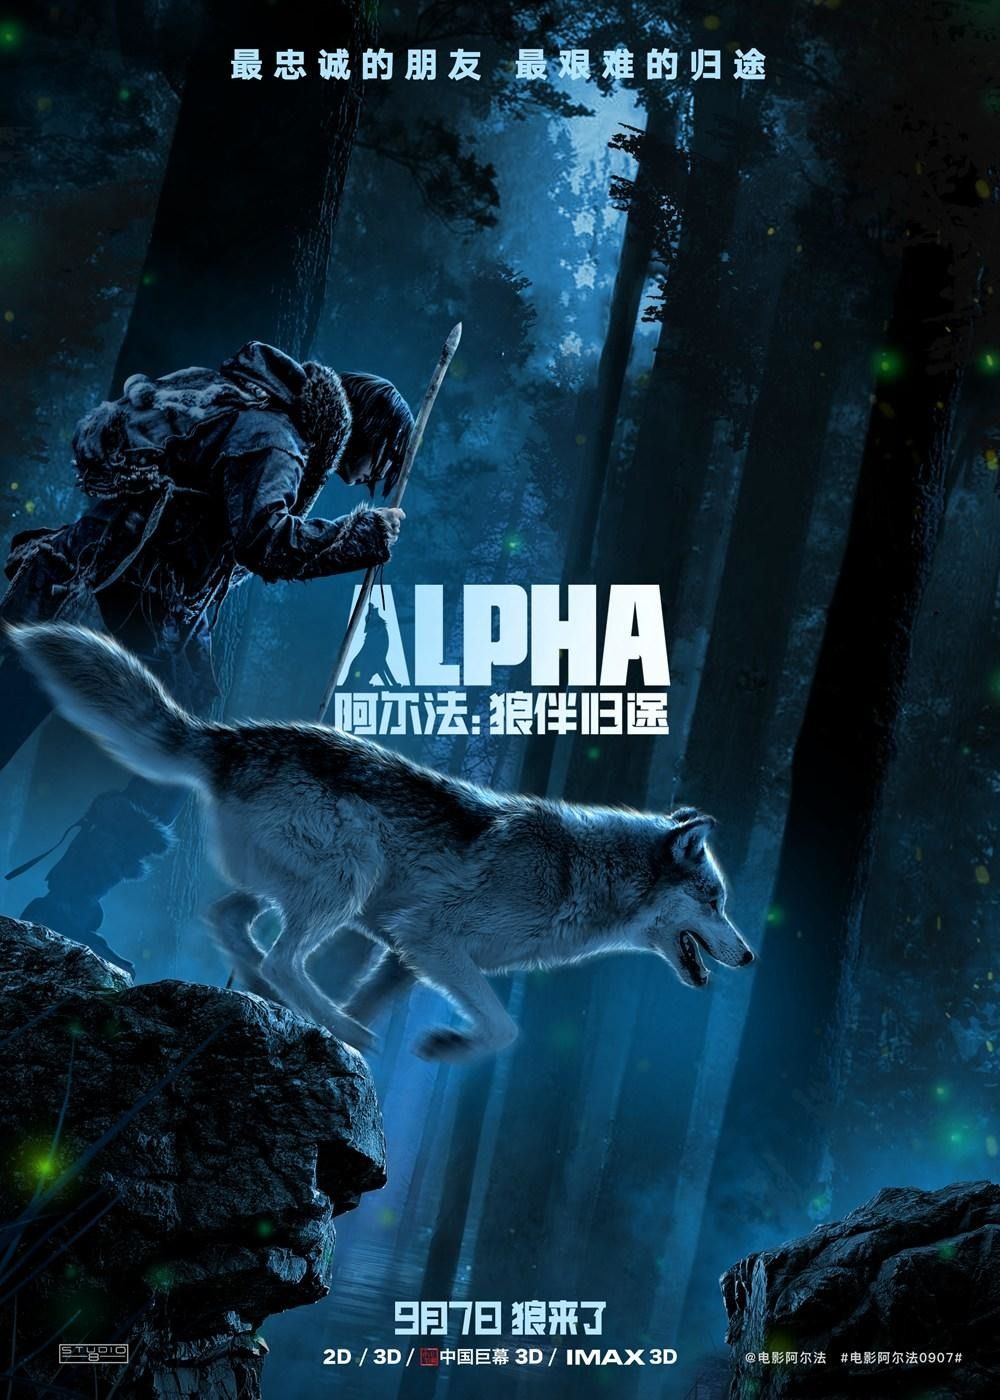 Alpha Movie Review